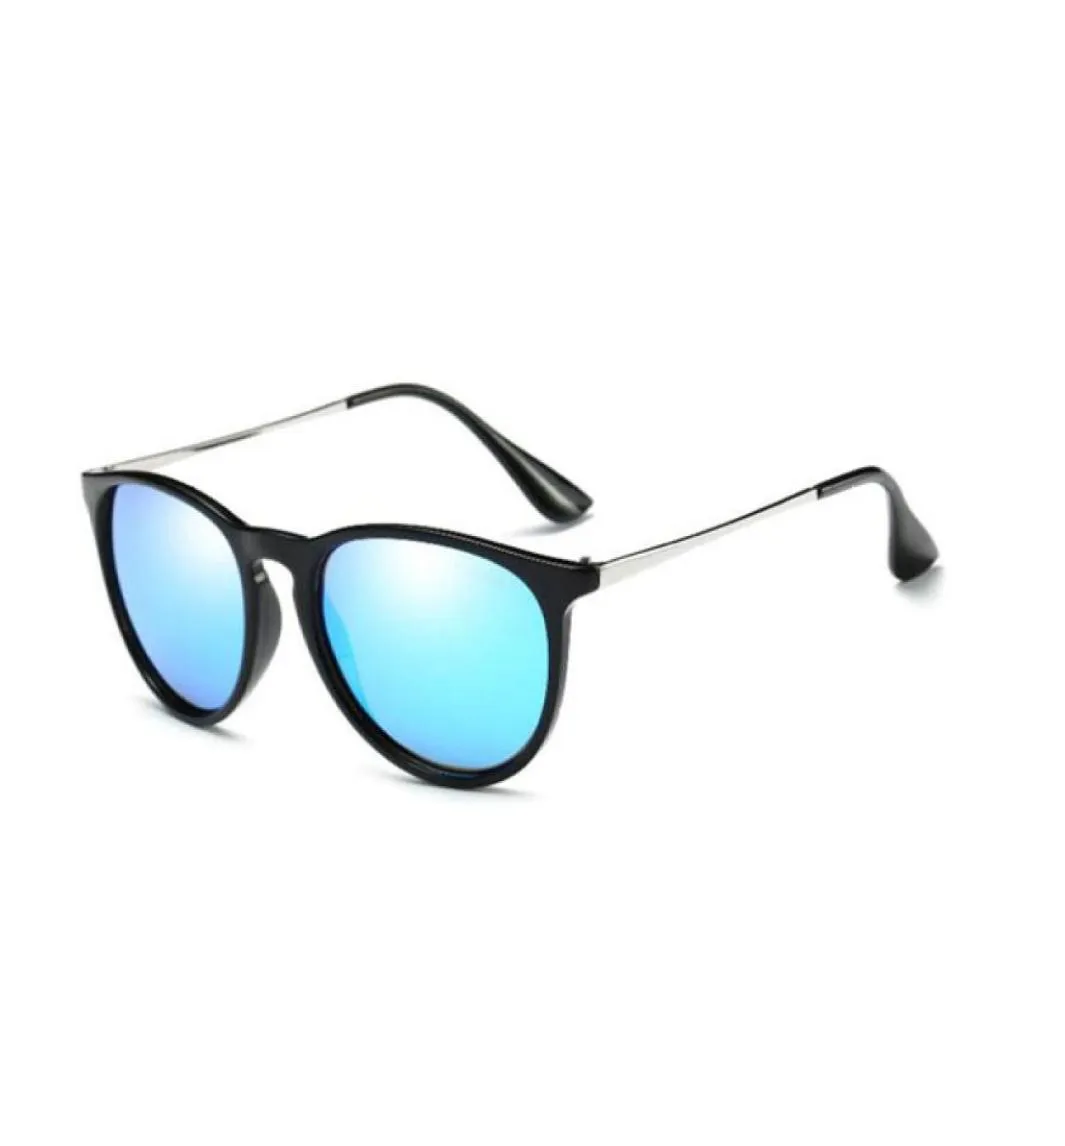 Klassieke ronde zonnebril heren dames kleurrijke spiegelkappen Woman039s kwaliteit zonnebril zilver zwart frame top met koffers9175892